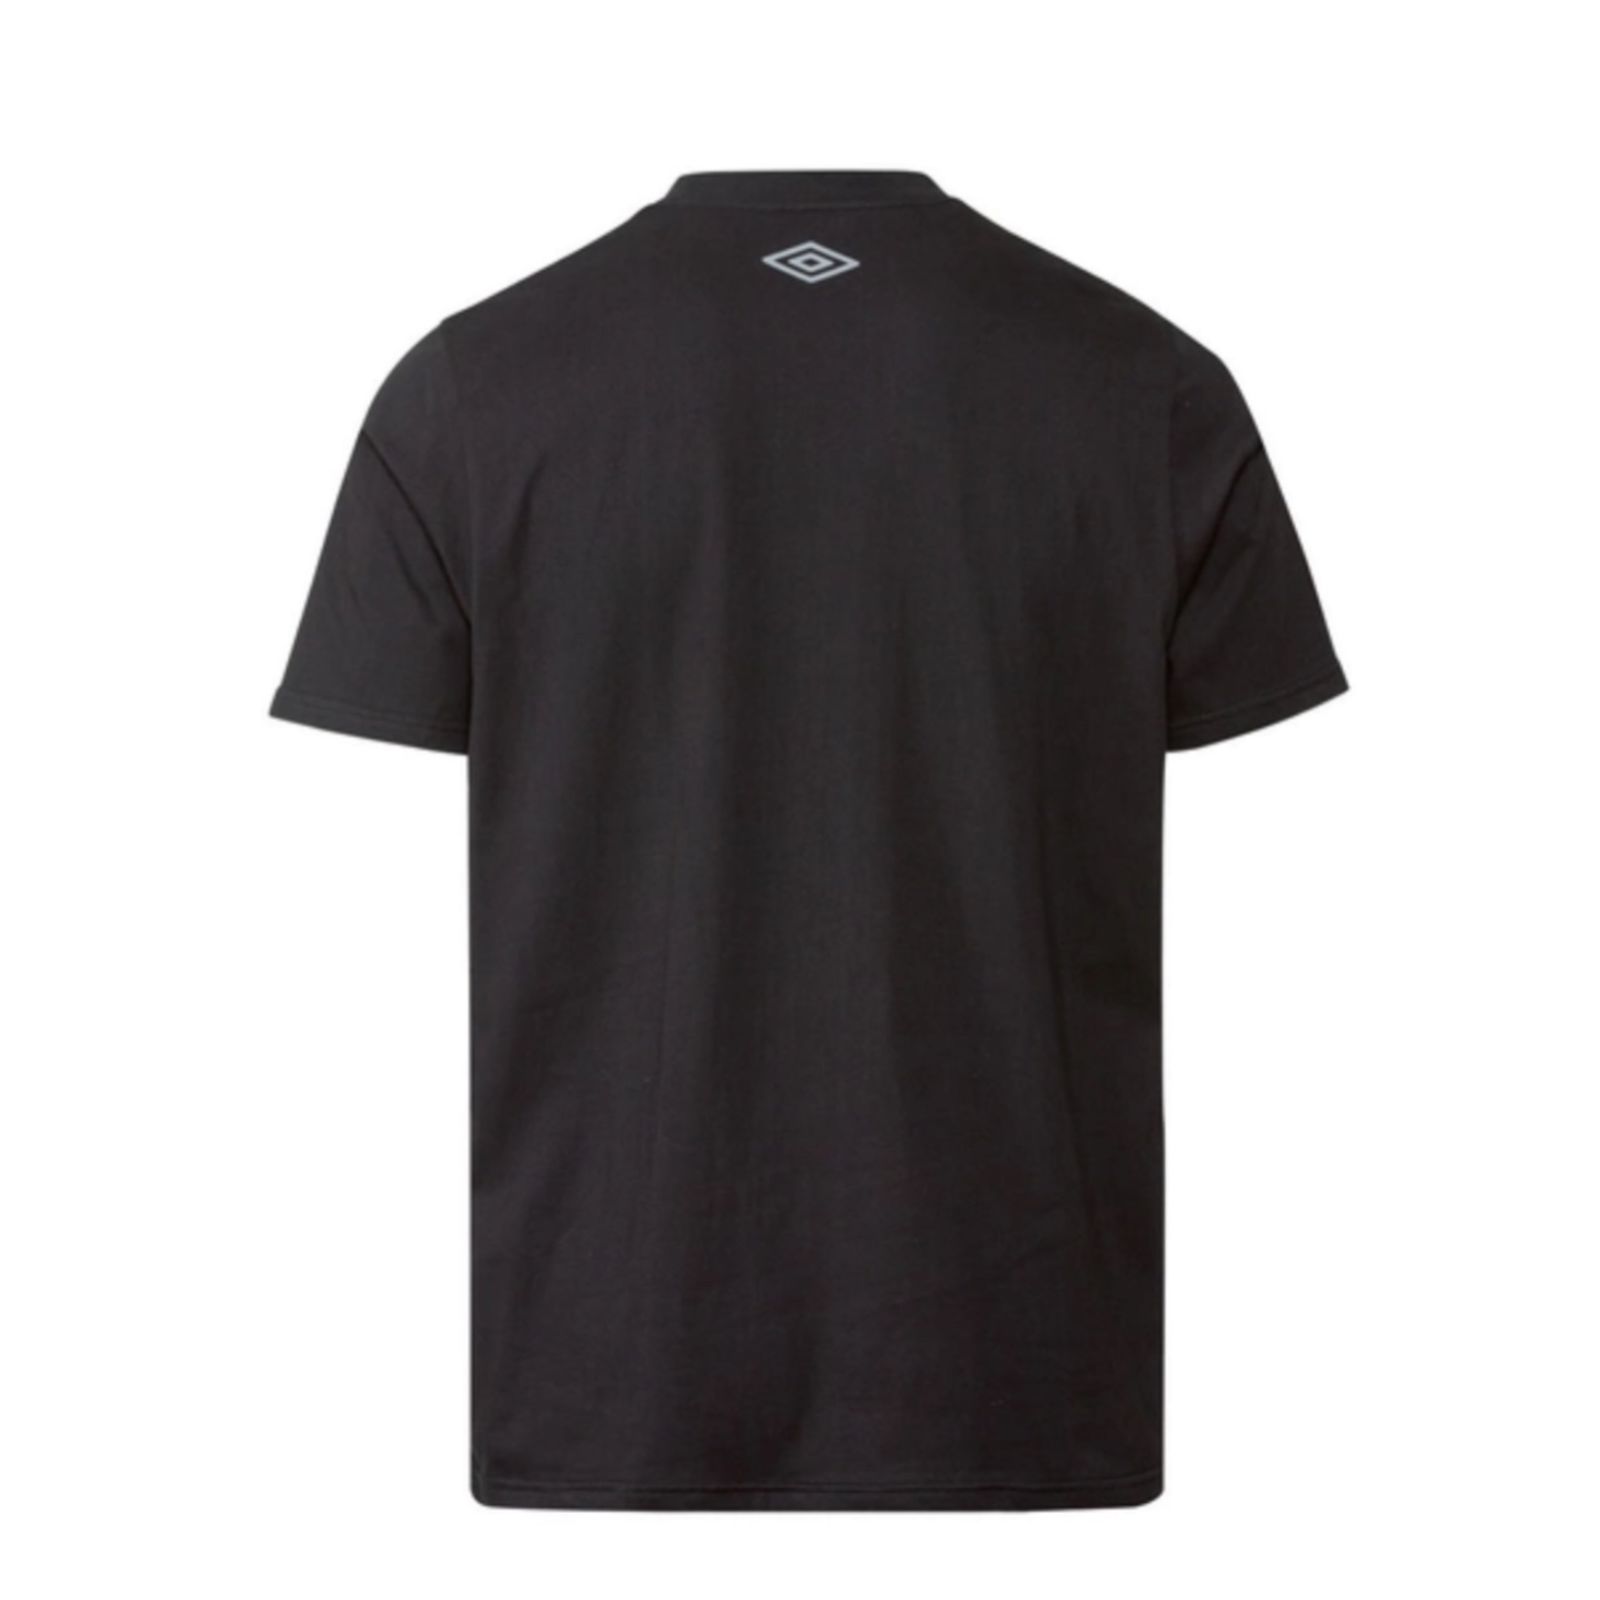 تی شرت آستین کوتاه مردانه آمبرو مدل 401123_2107 -  - 2